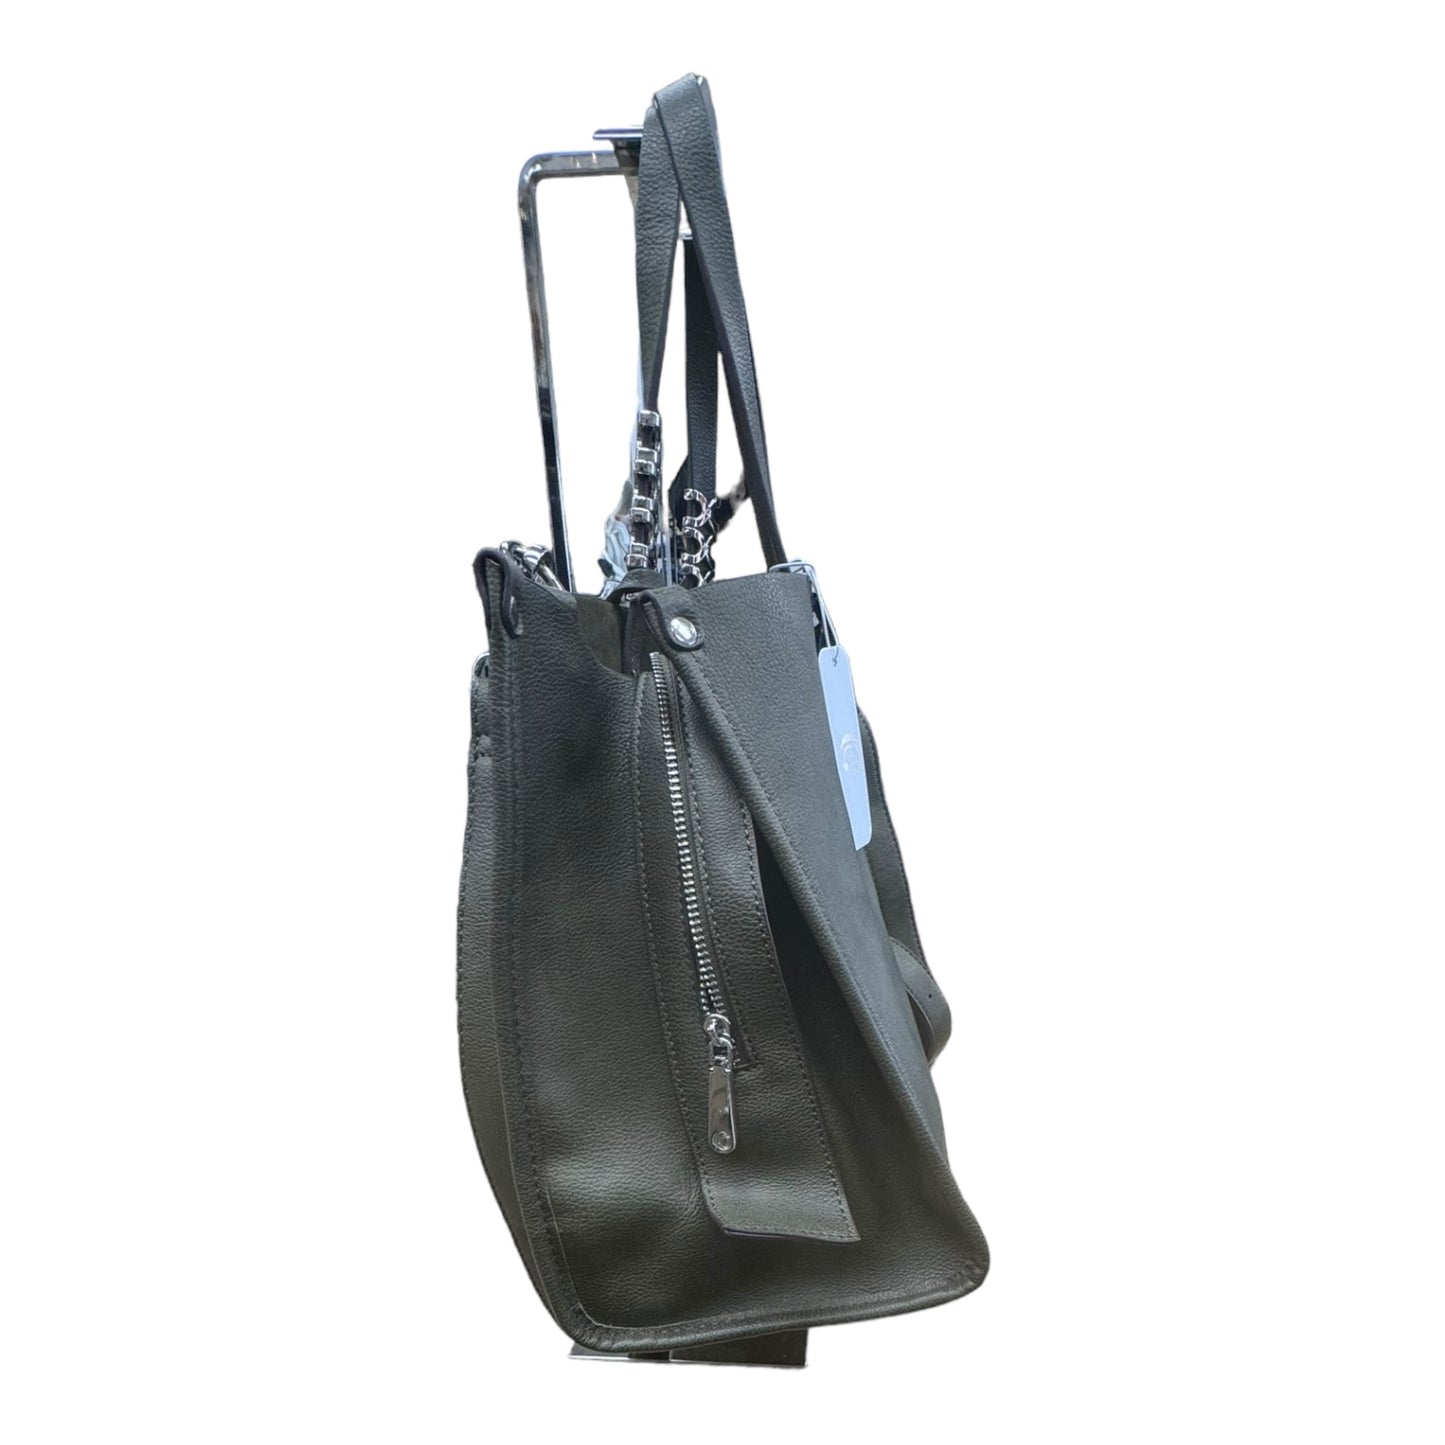 Handbag By Charlie B  Size: Medium